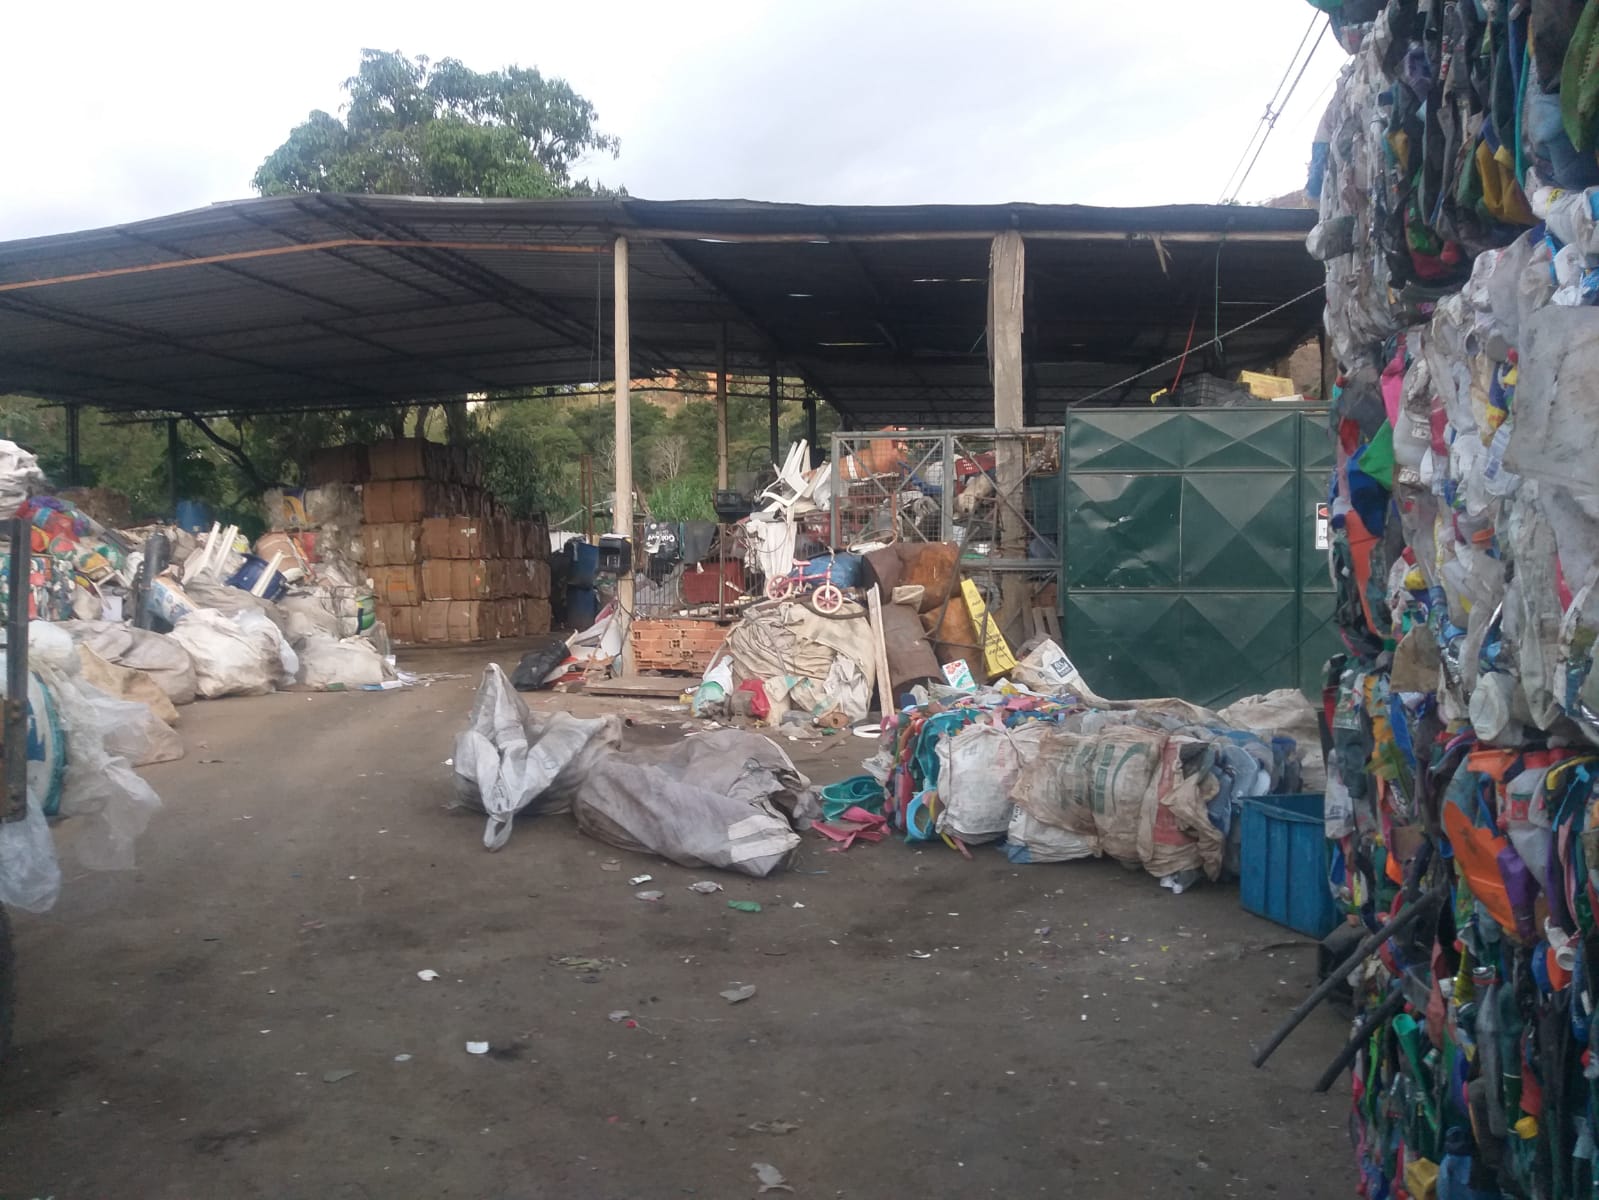 Empresa de reciclagem sem licença é fiscalizada em São José do Vale do Rio Preto após denúncia 